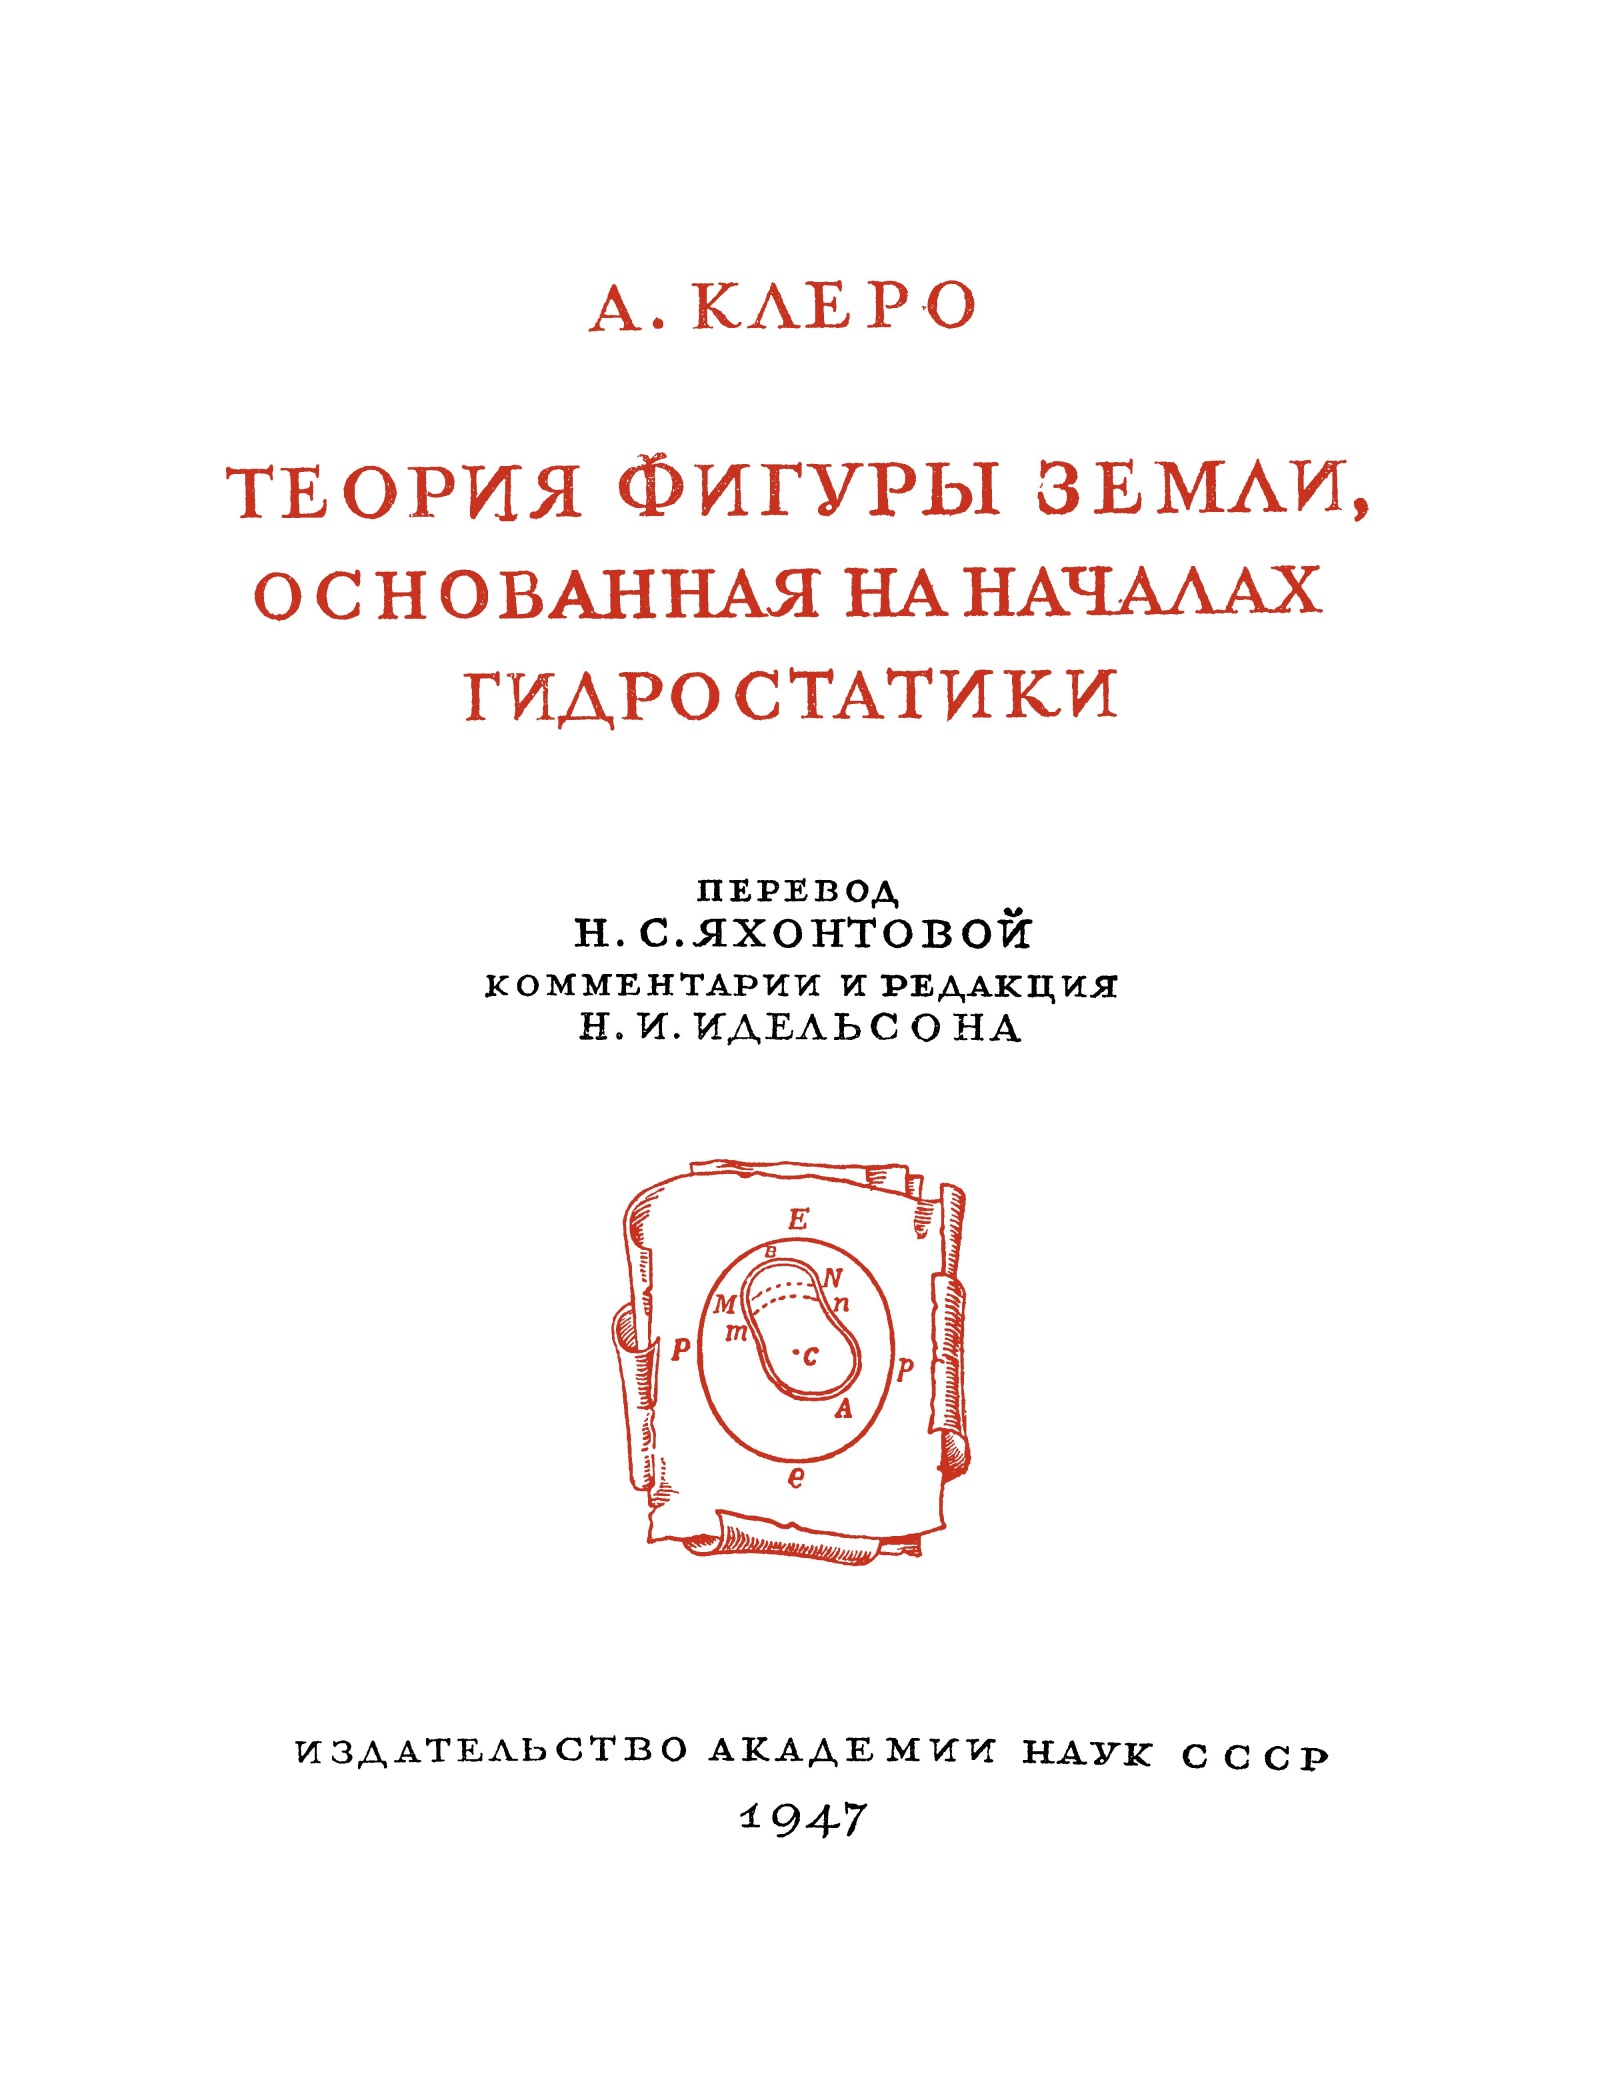 Перевод Клеро на русский, сделанный только в середине 20 века.